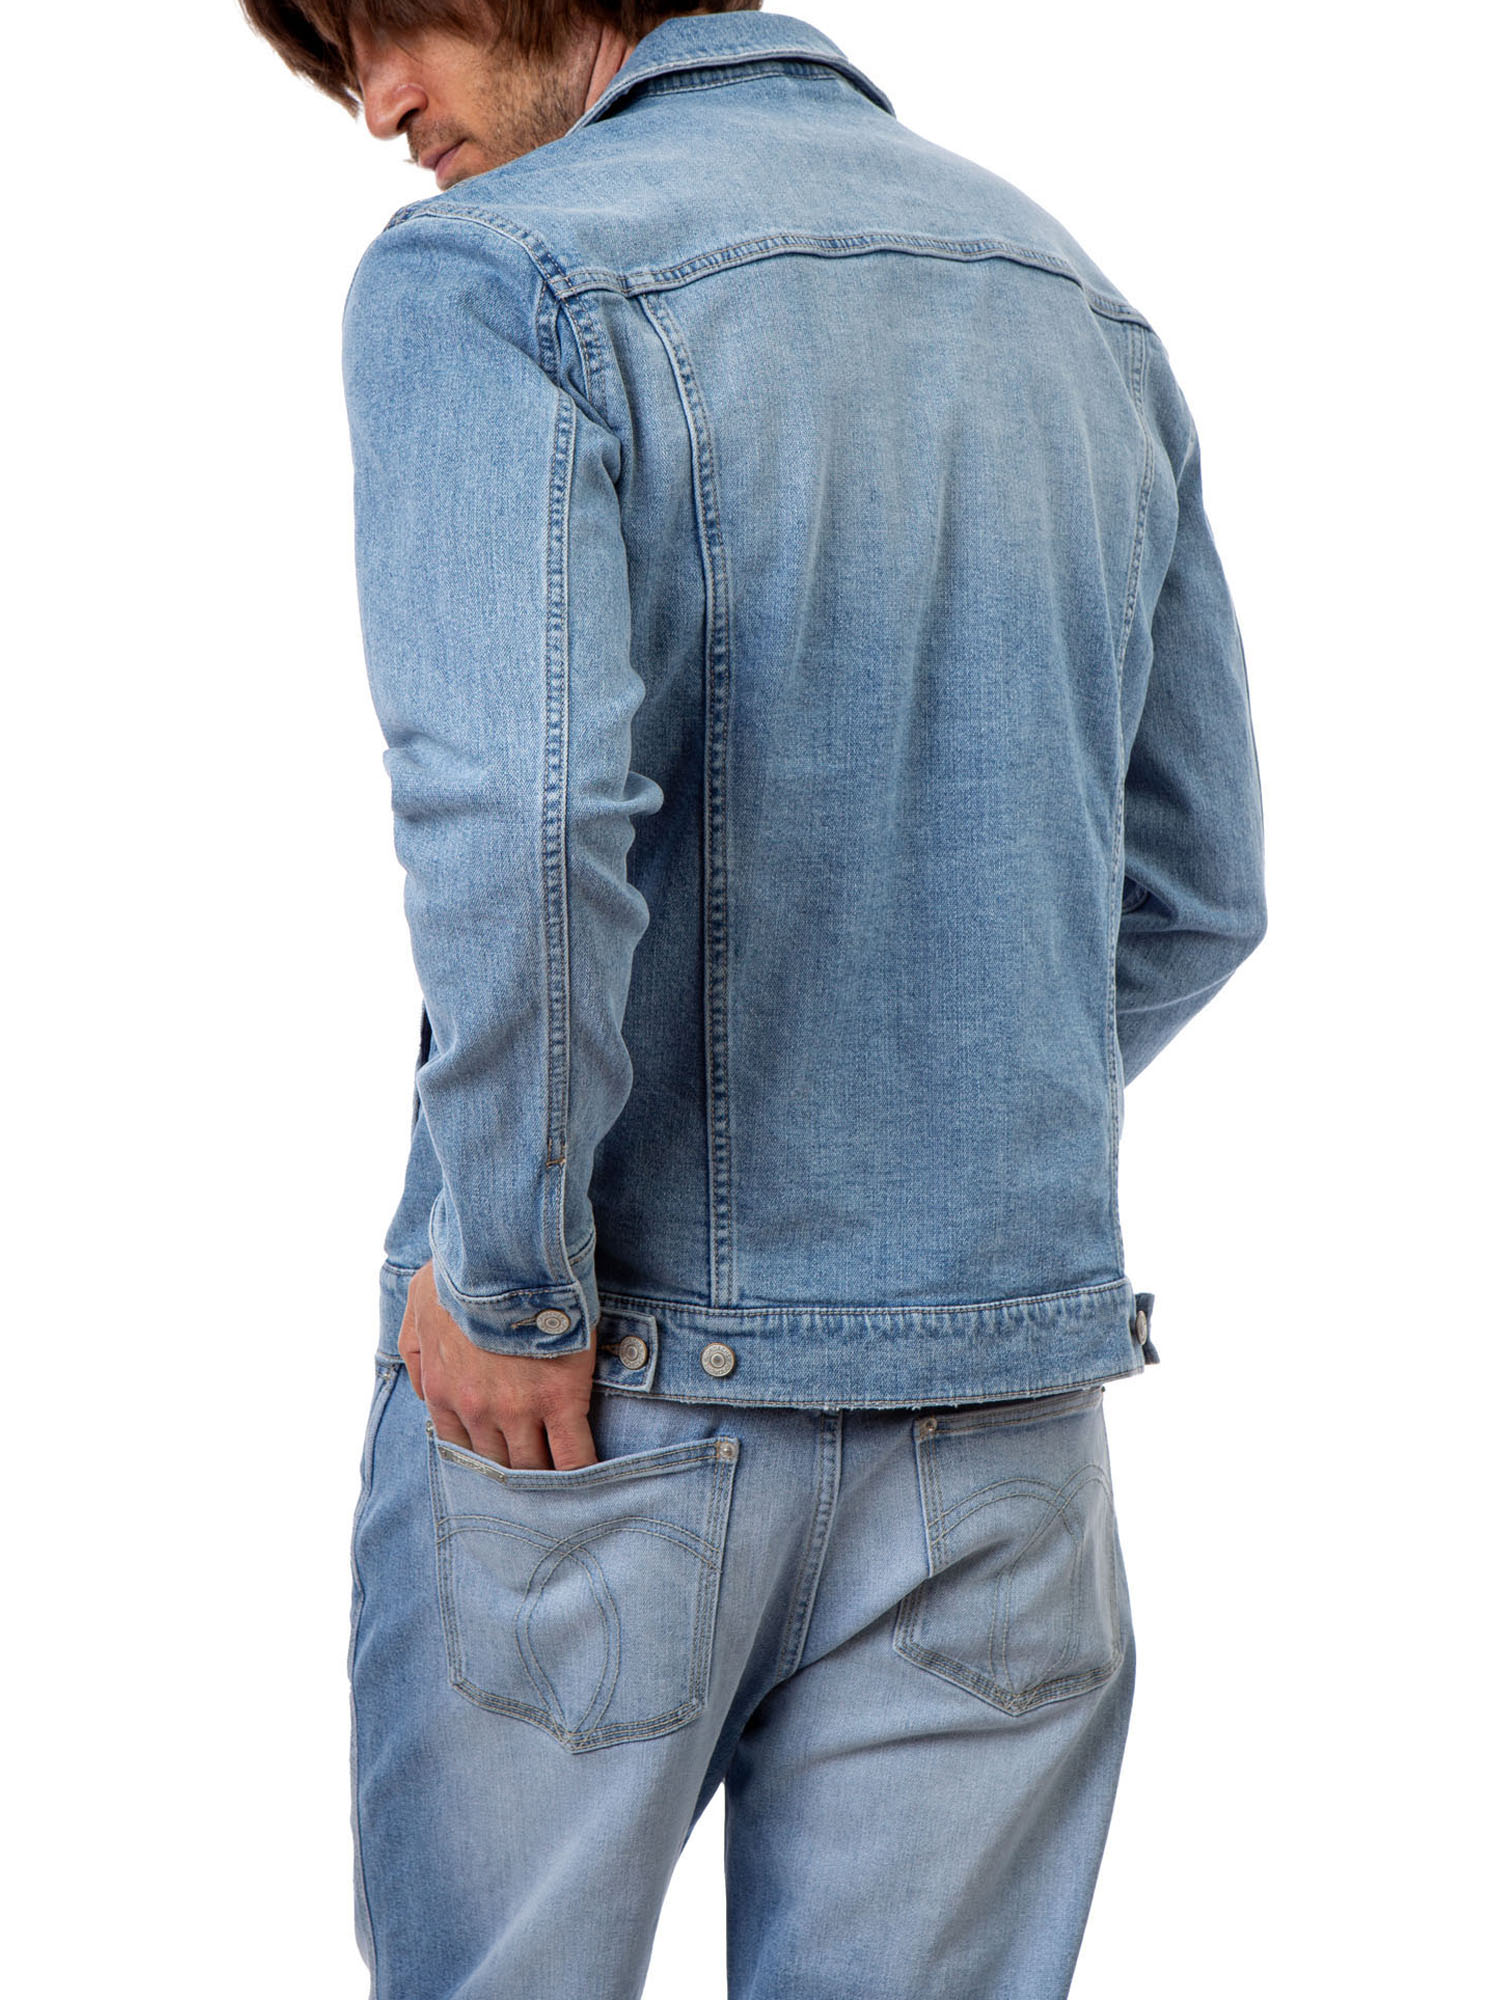 Jordache Vintage Long Sleeve Slim Jacket (Men's) 1 Pack - image 2 of 7